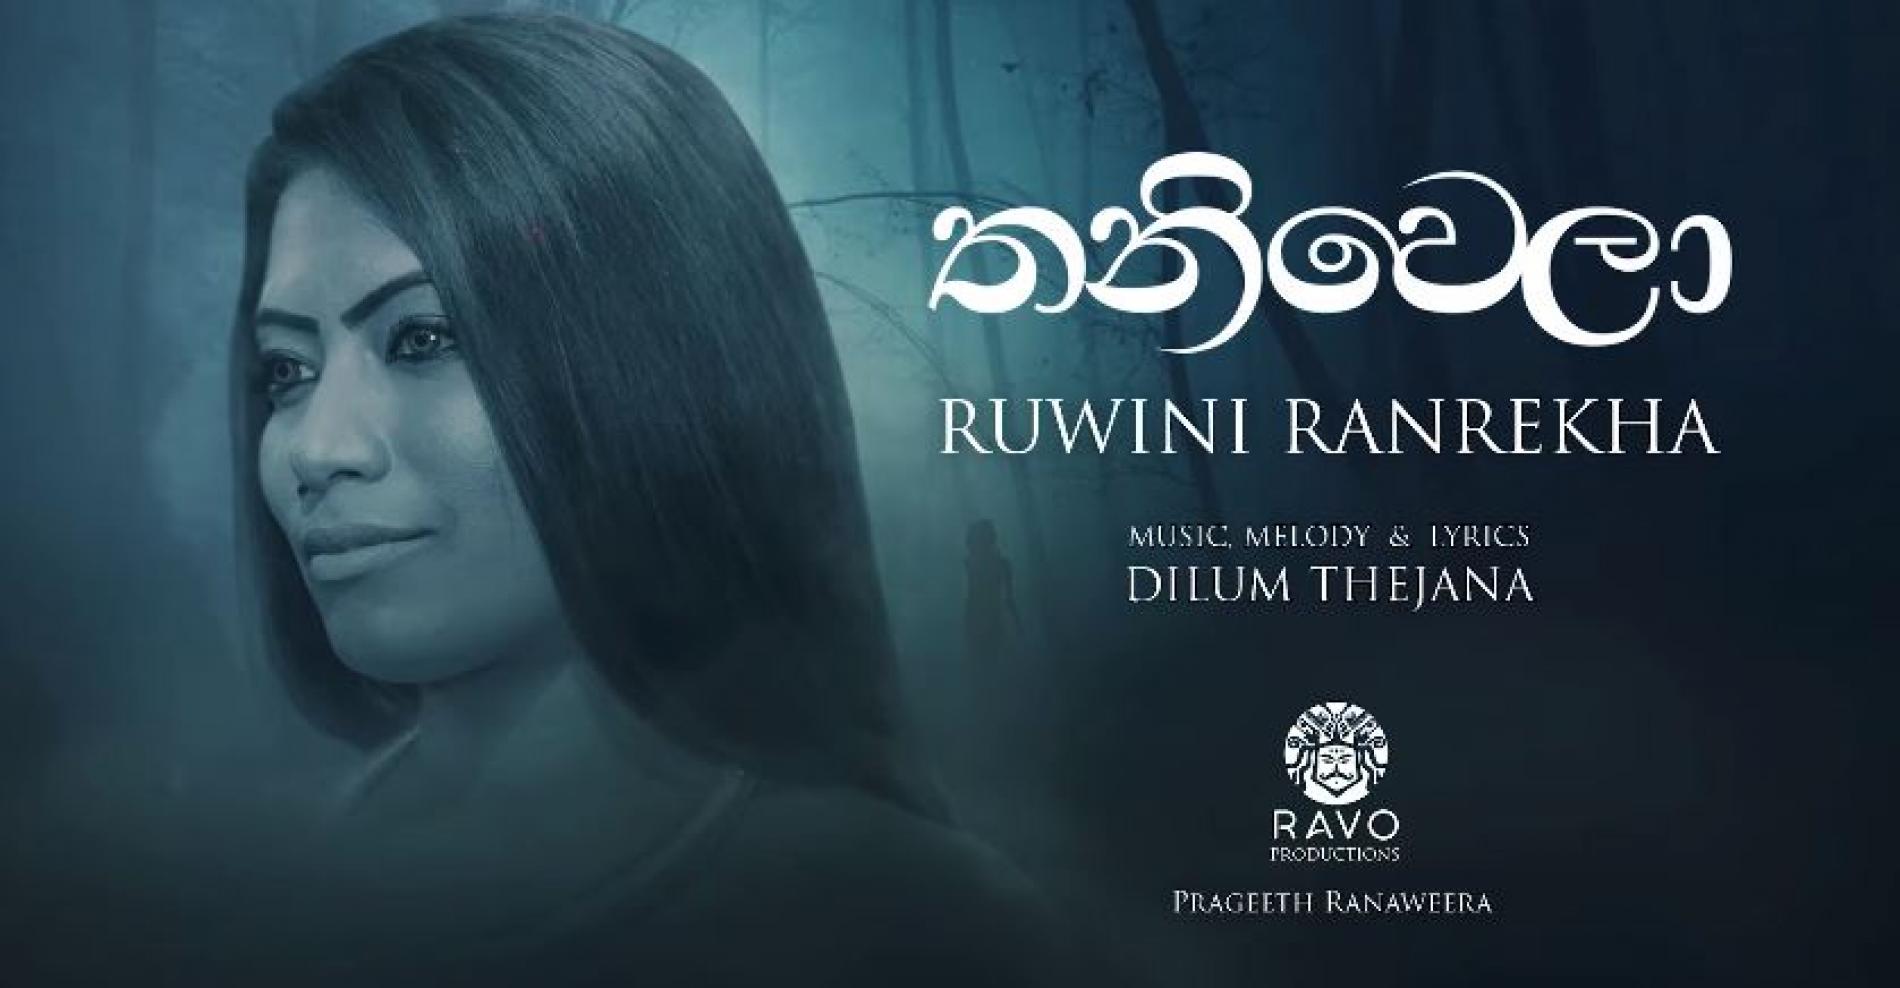 Ruwini Ranrekha – Thaniwela (තනිවෙලා) Dilum Thejana (Ravo productions)